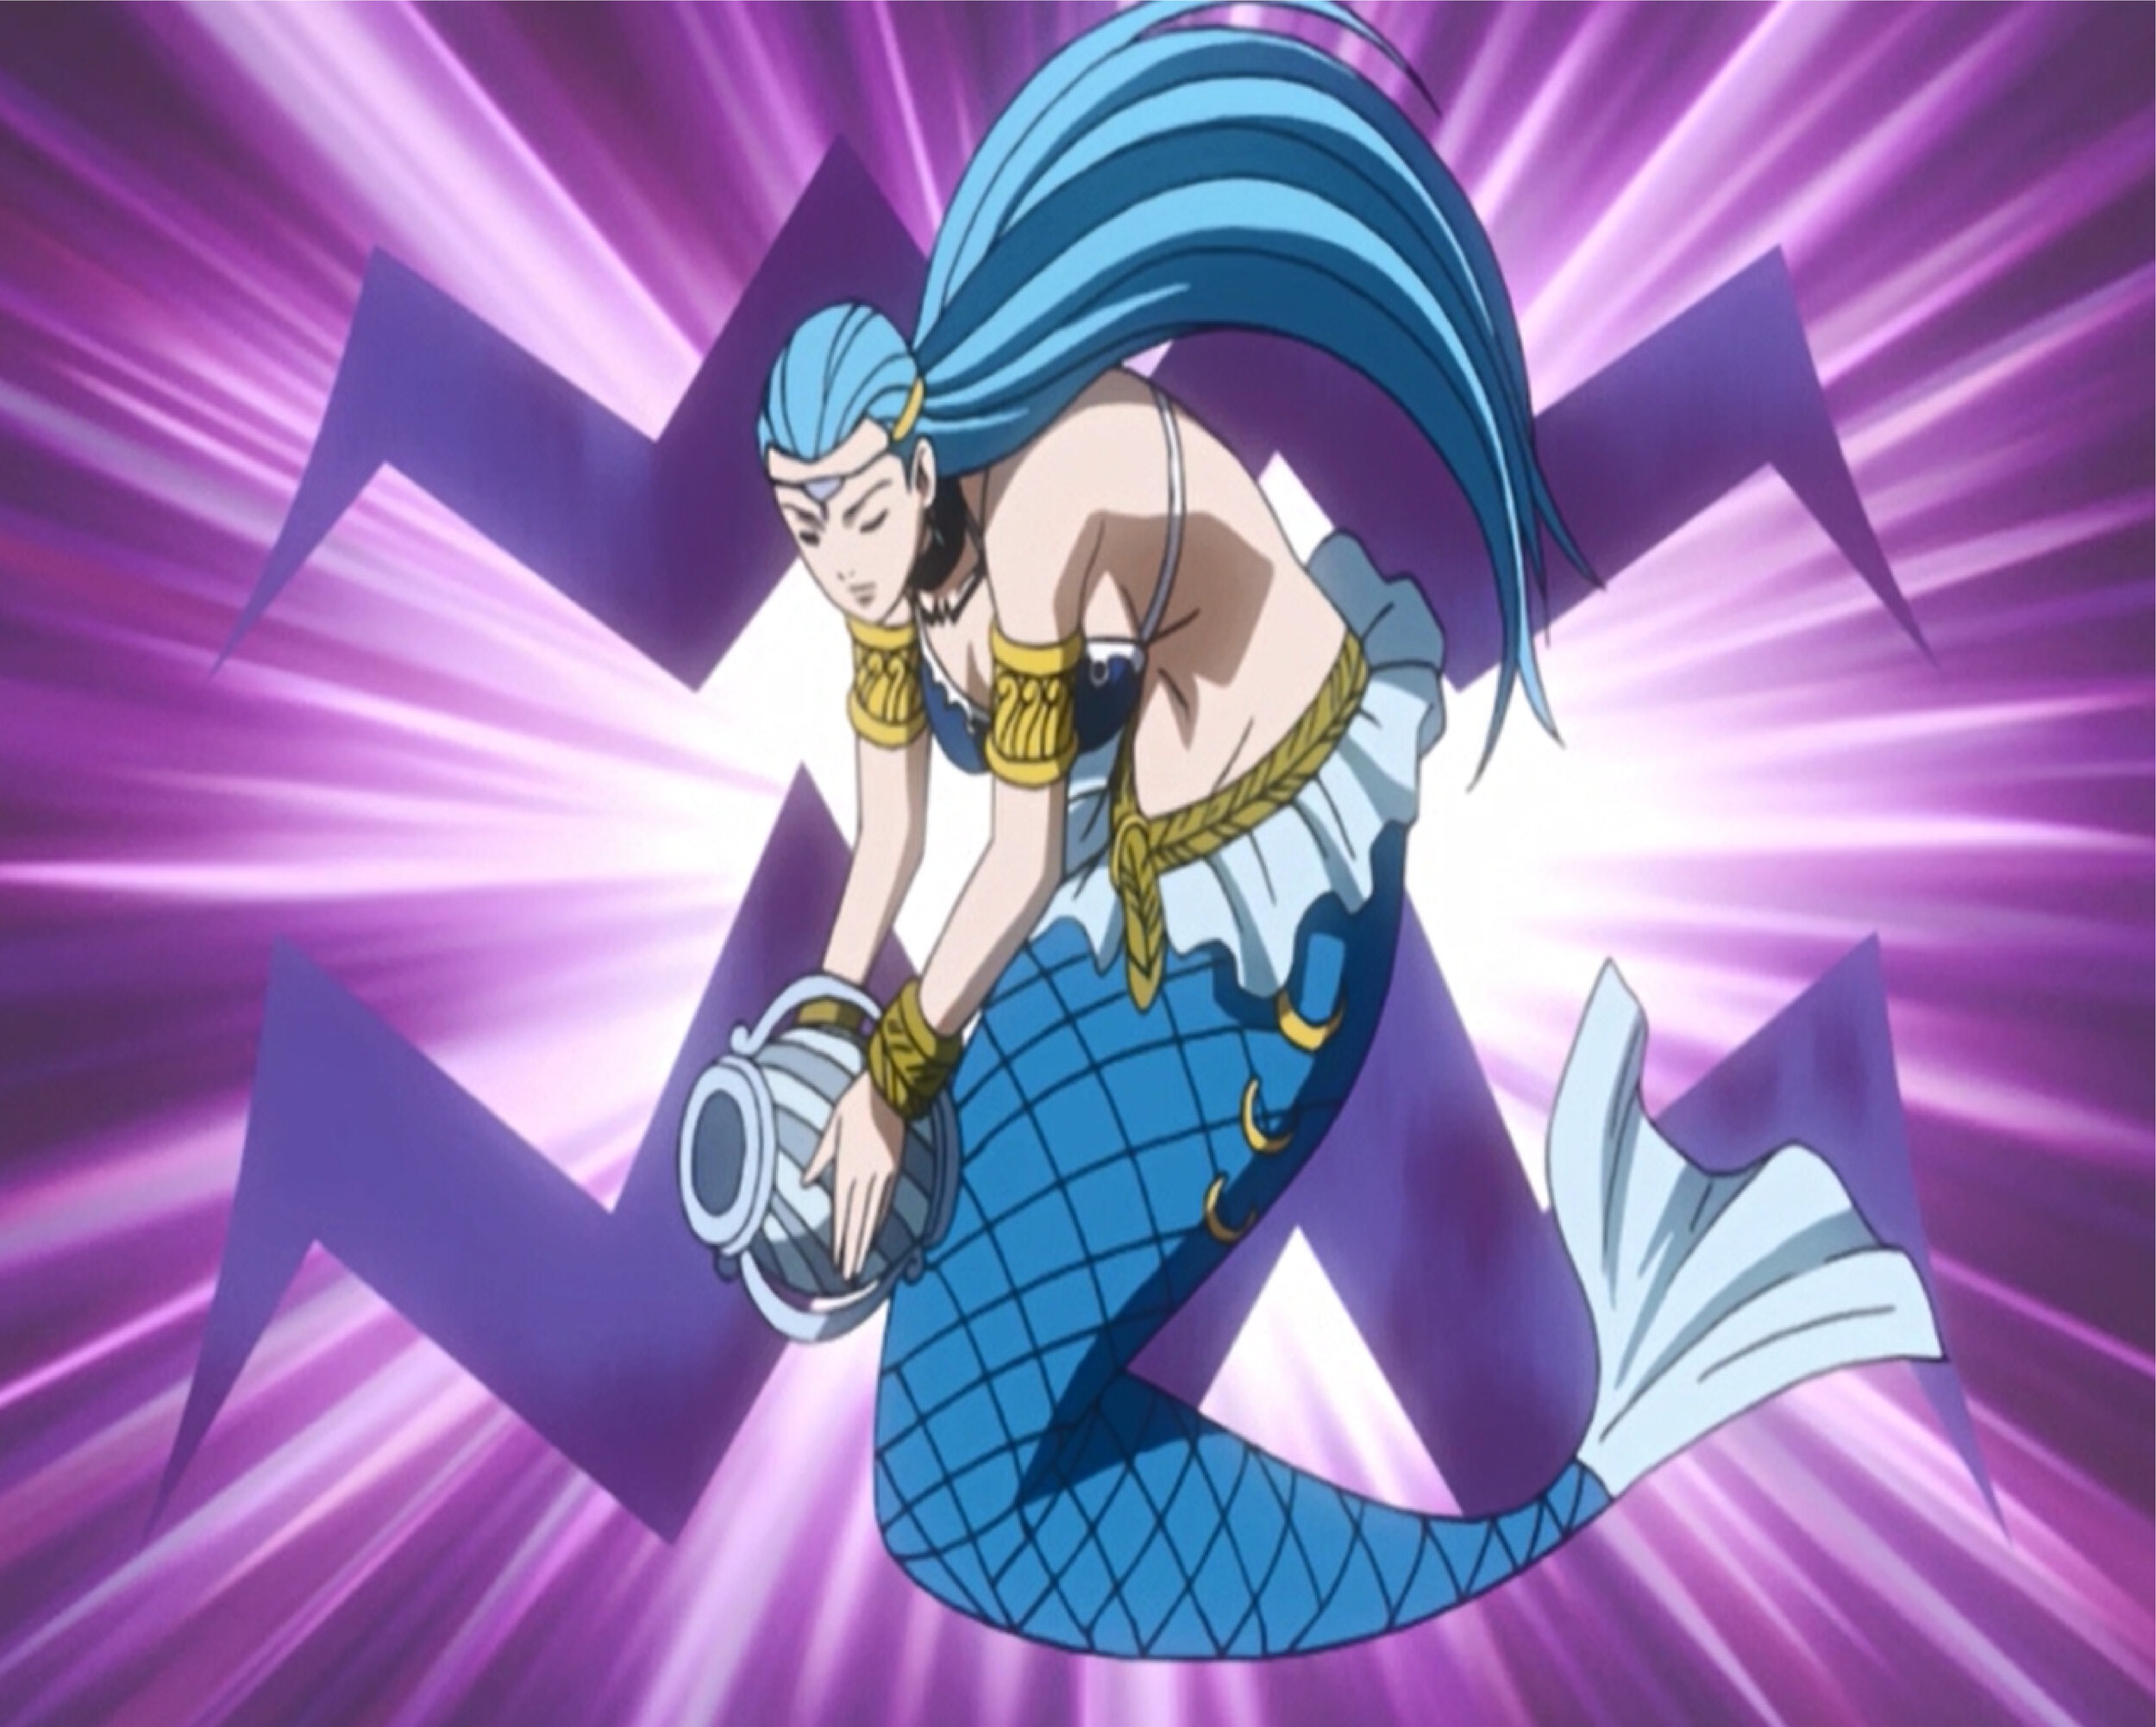 Fairy Tail a Flawed but Enjoyable Anime – Adrestia's Geeks